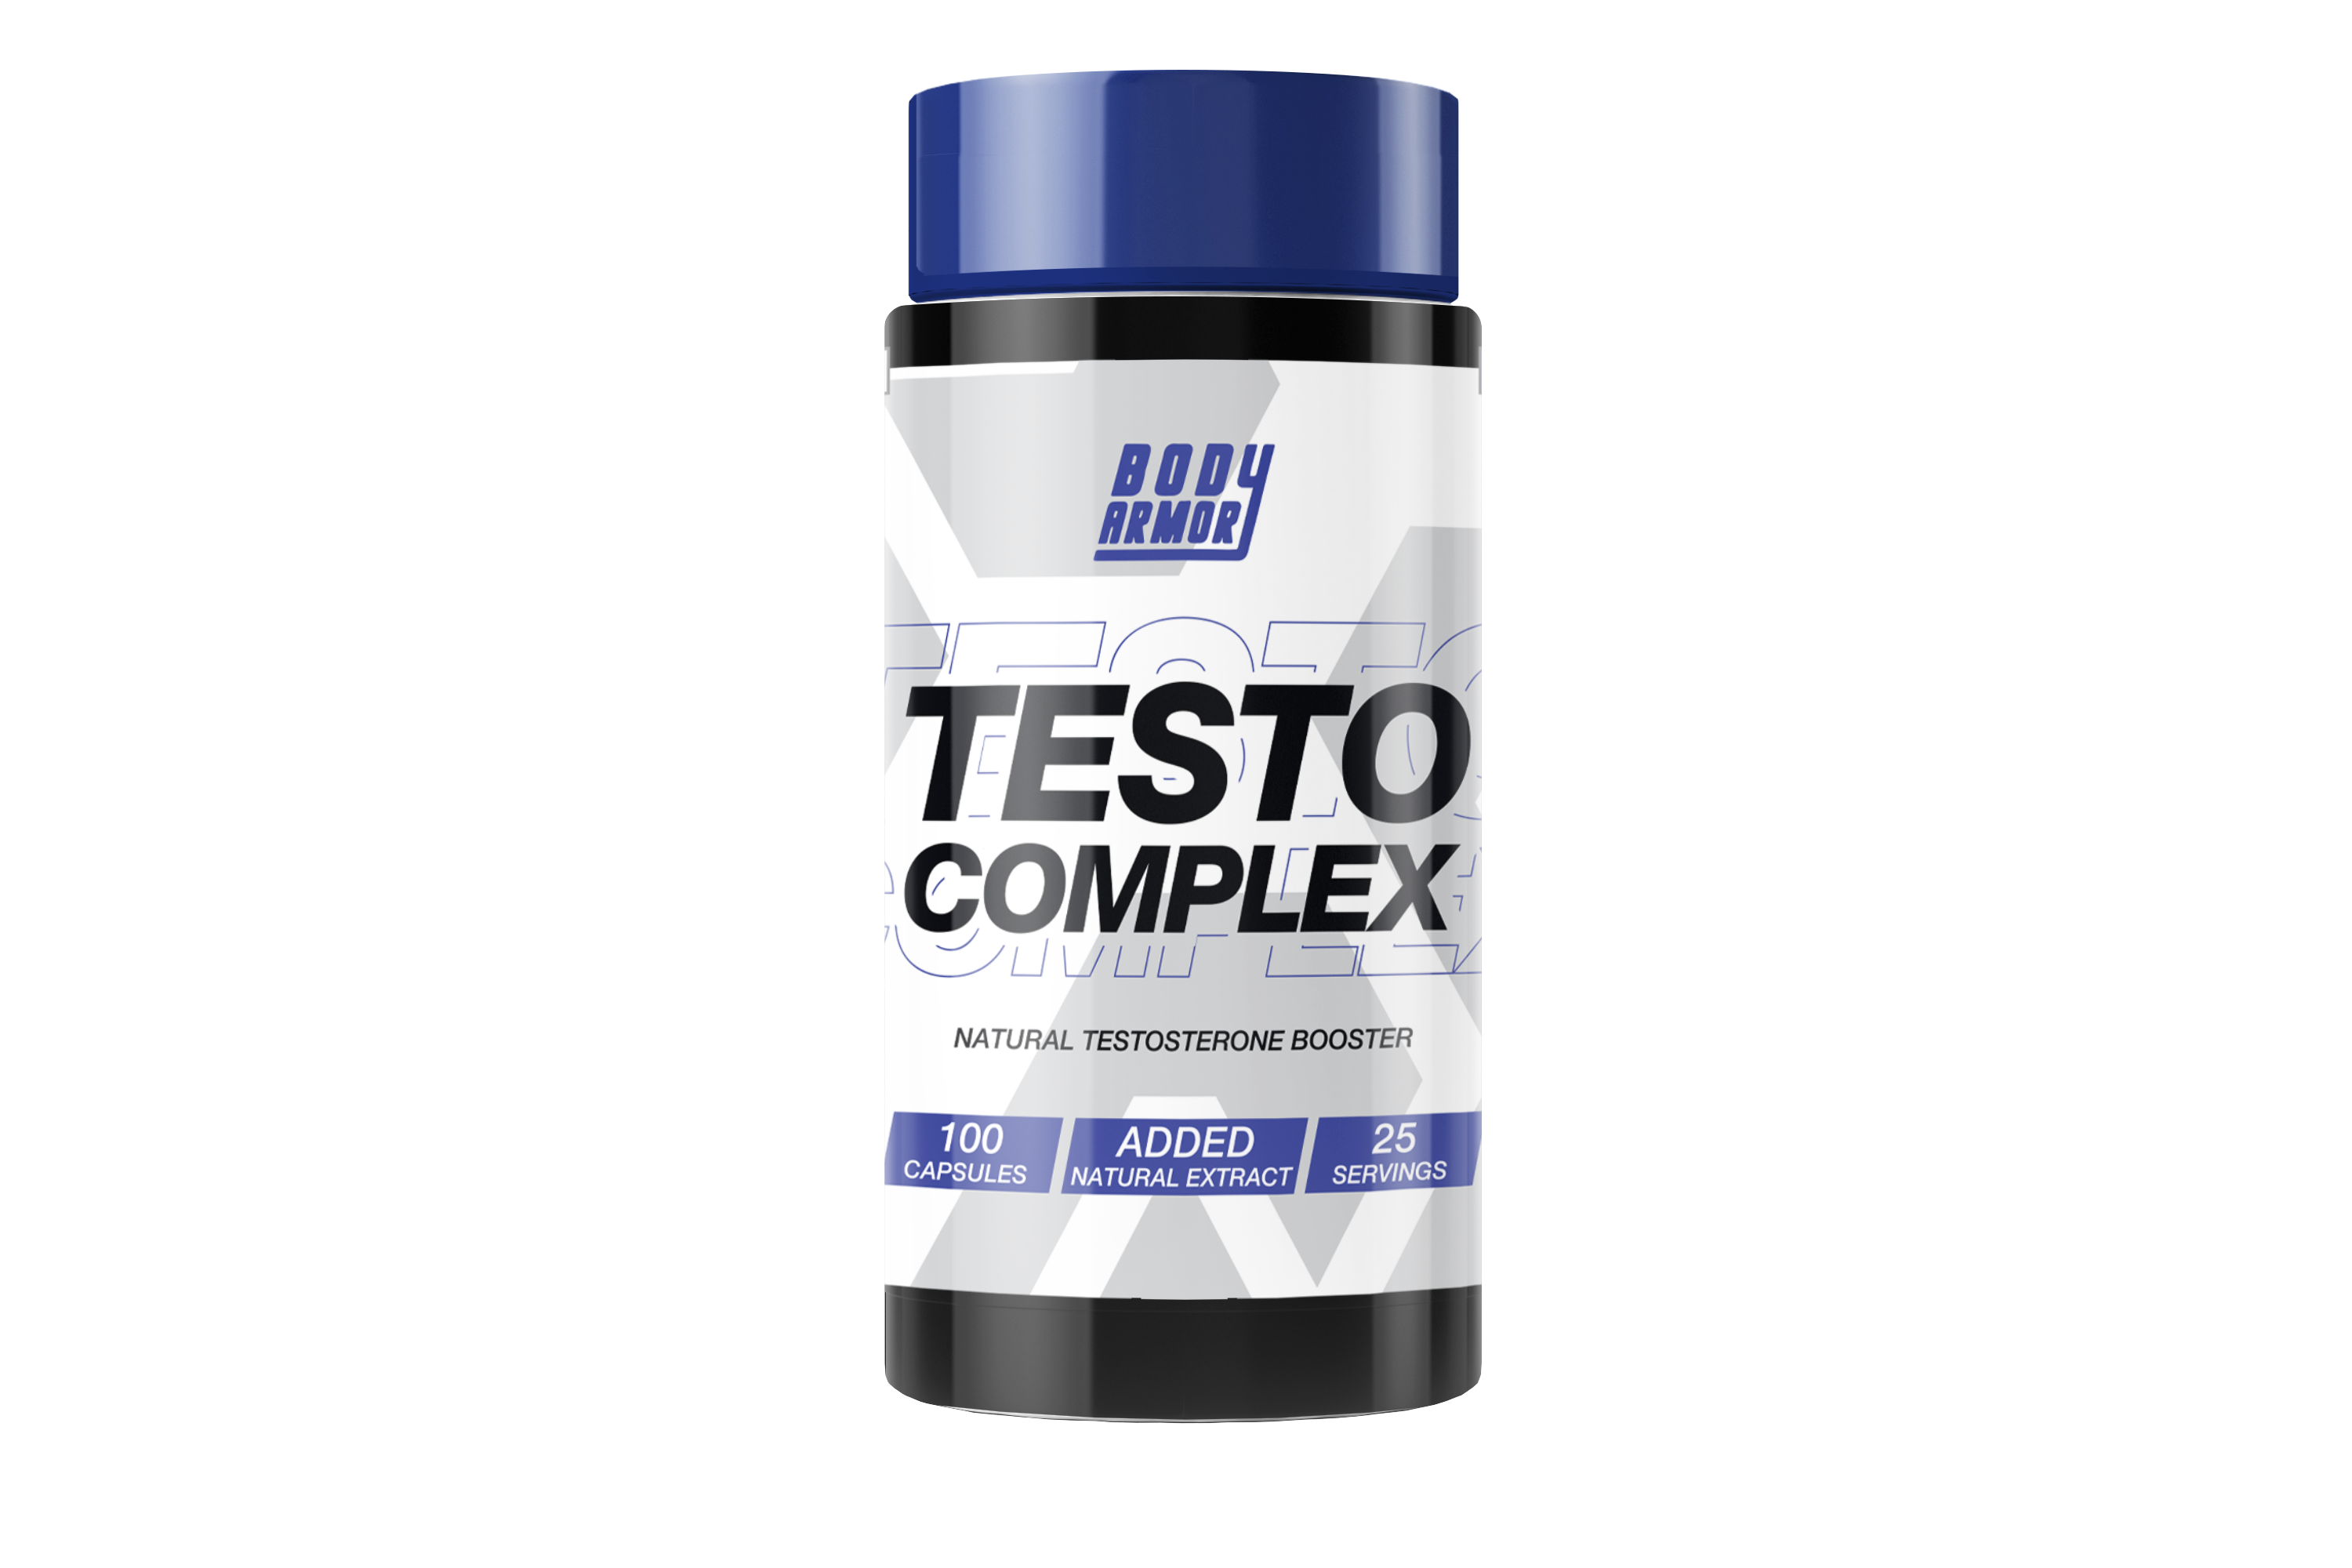 Body Armor TESTO Complex – Natural Testosterone Booster